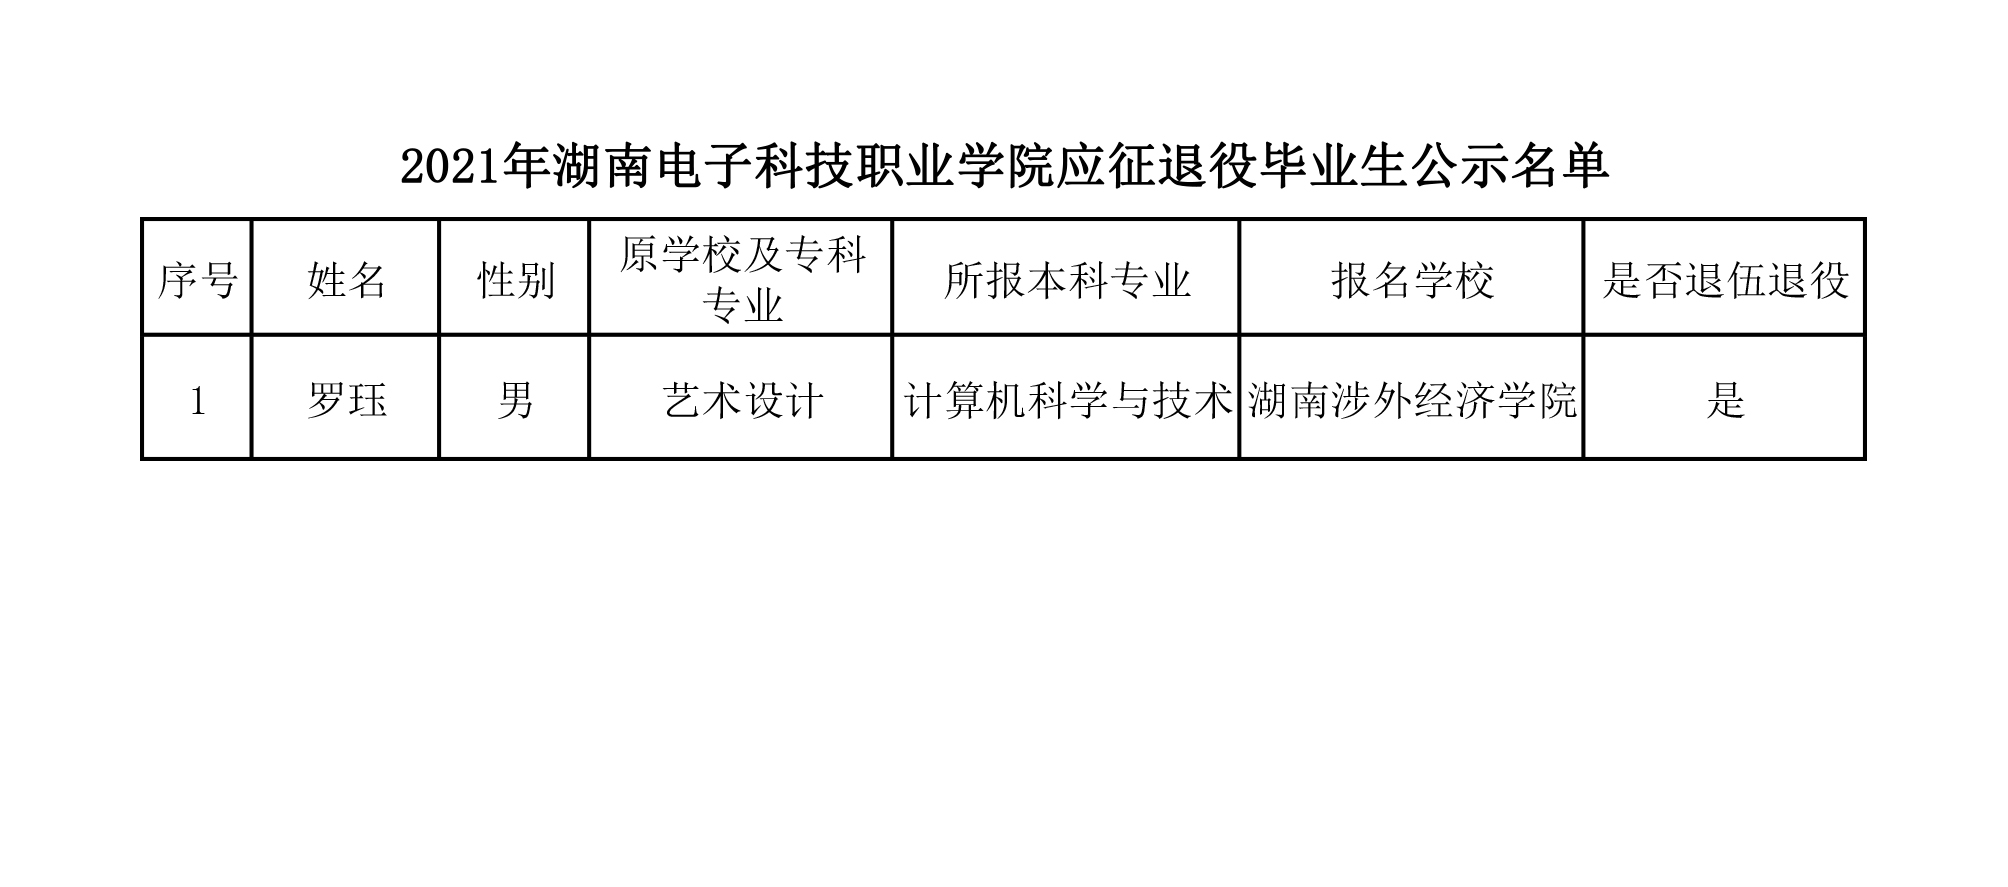 2021年湖南电子科技职业学院应征退役毕业生公示名单.jpg